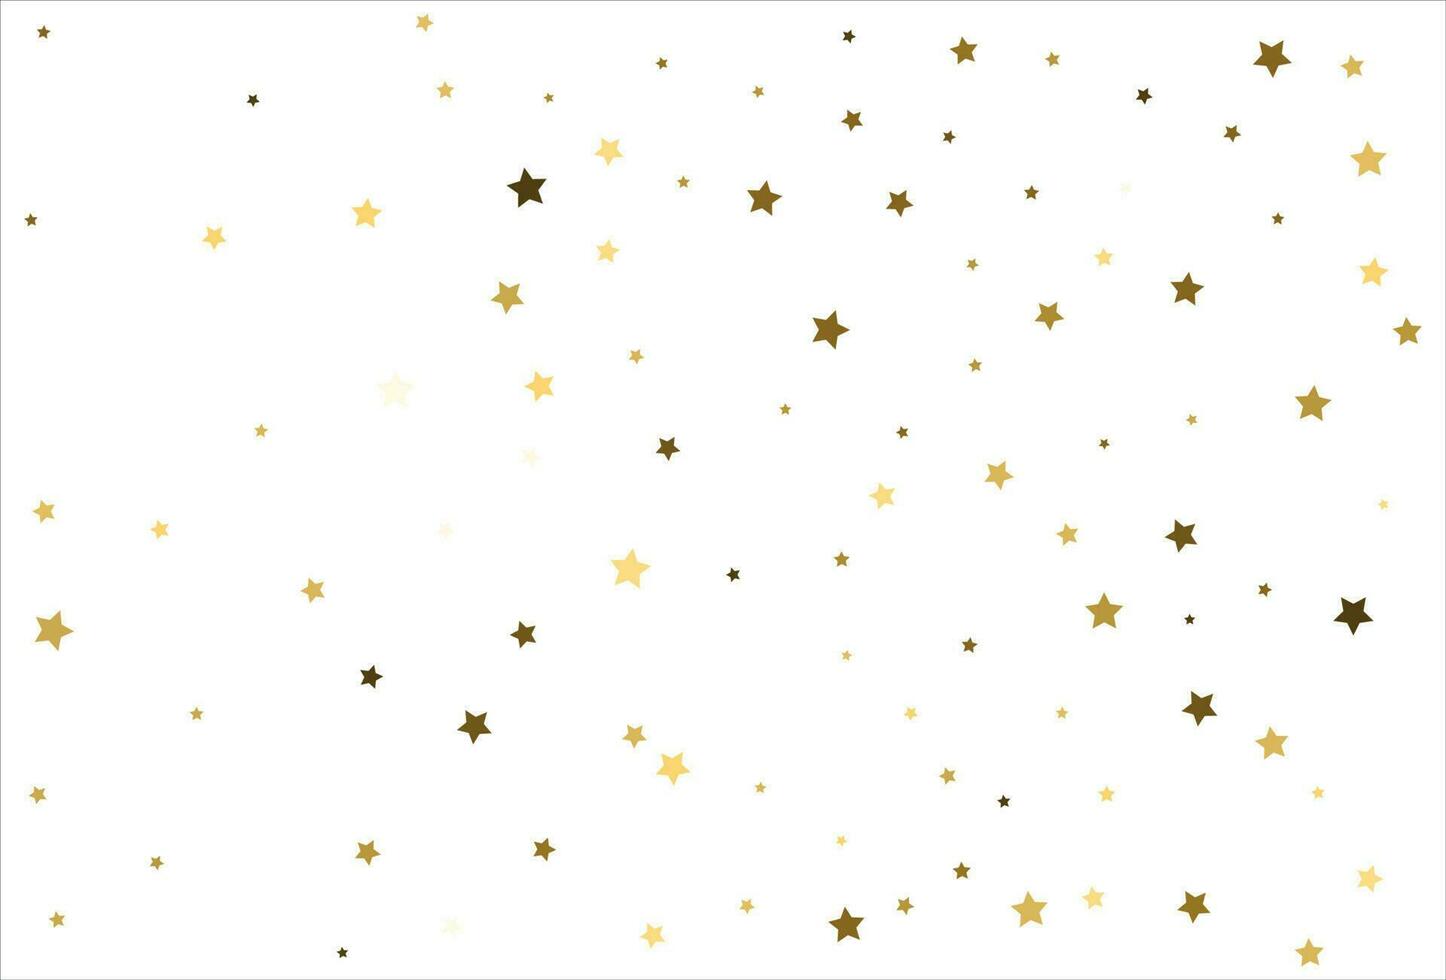 estrelas de ouro caindo aleatórias no fundo branco. padrão de brilho para banner, cartão de felicitações, cartão de natal e ano novo, convite, cartão postal, embalagens de papel vetor